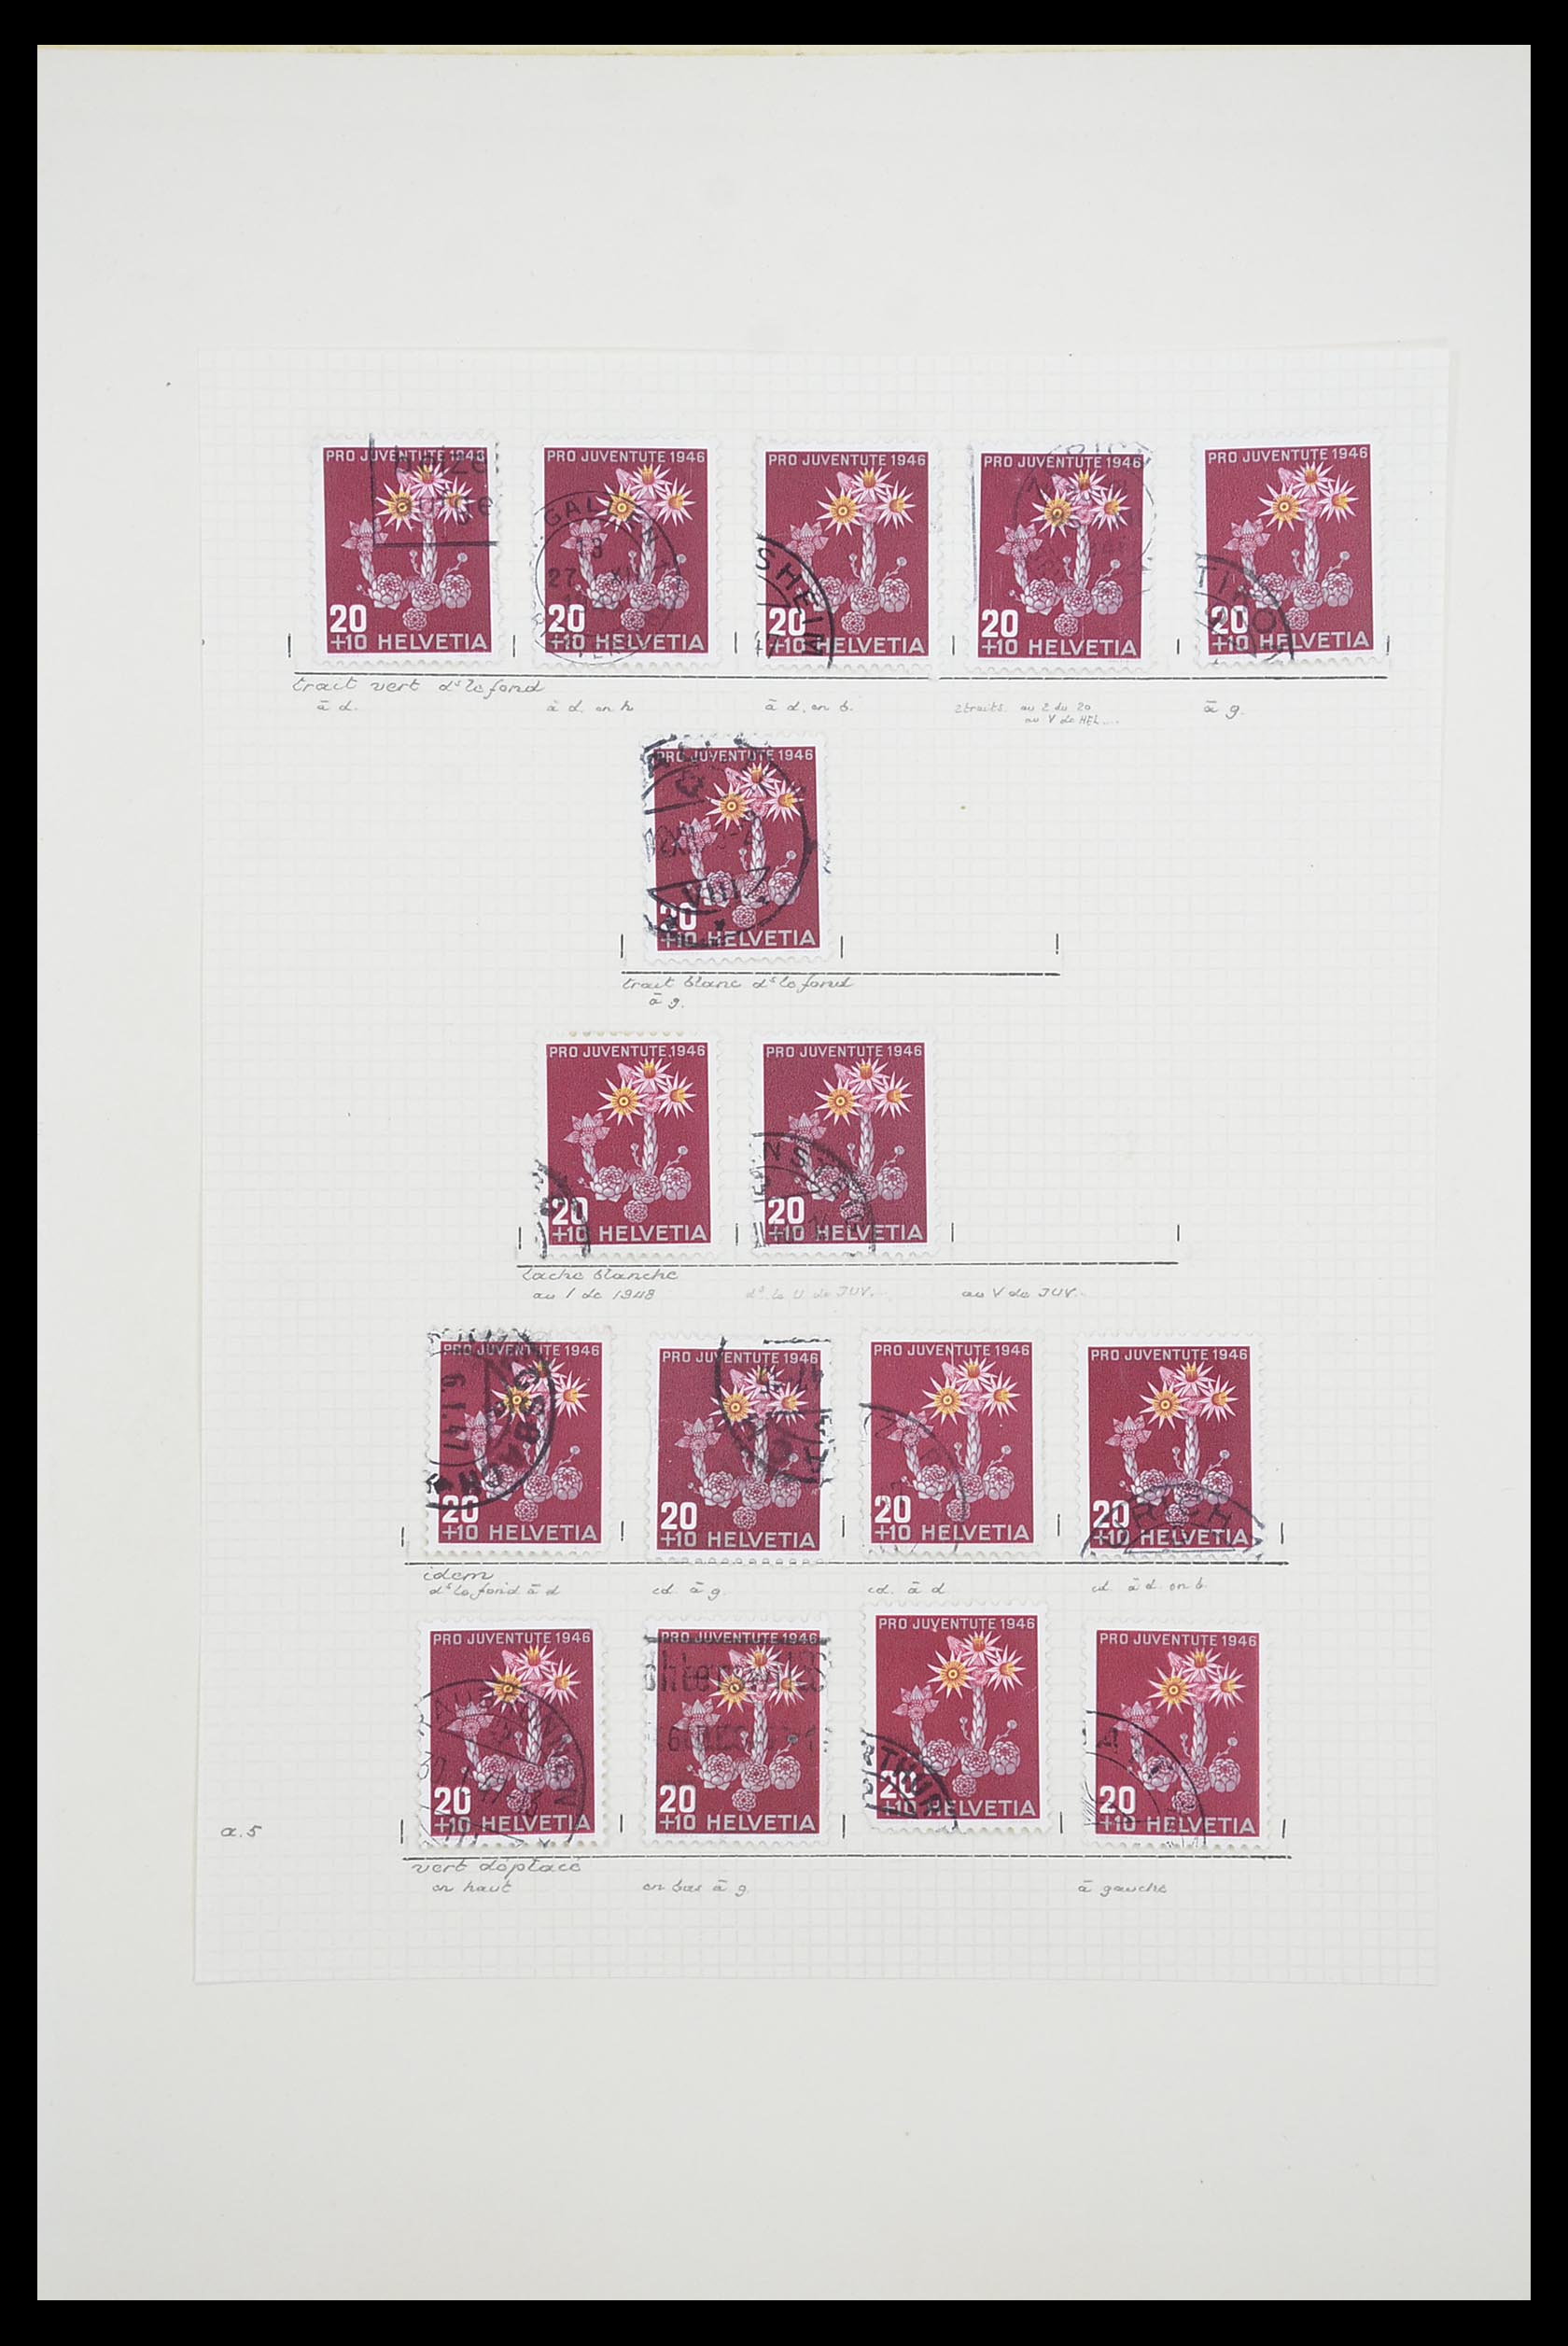 33926 060 - Postzegelverzameling 33926 Zwitserland uitzoekpartij 1850-1997.